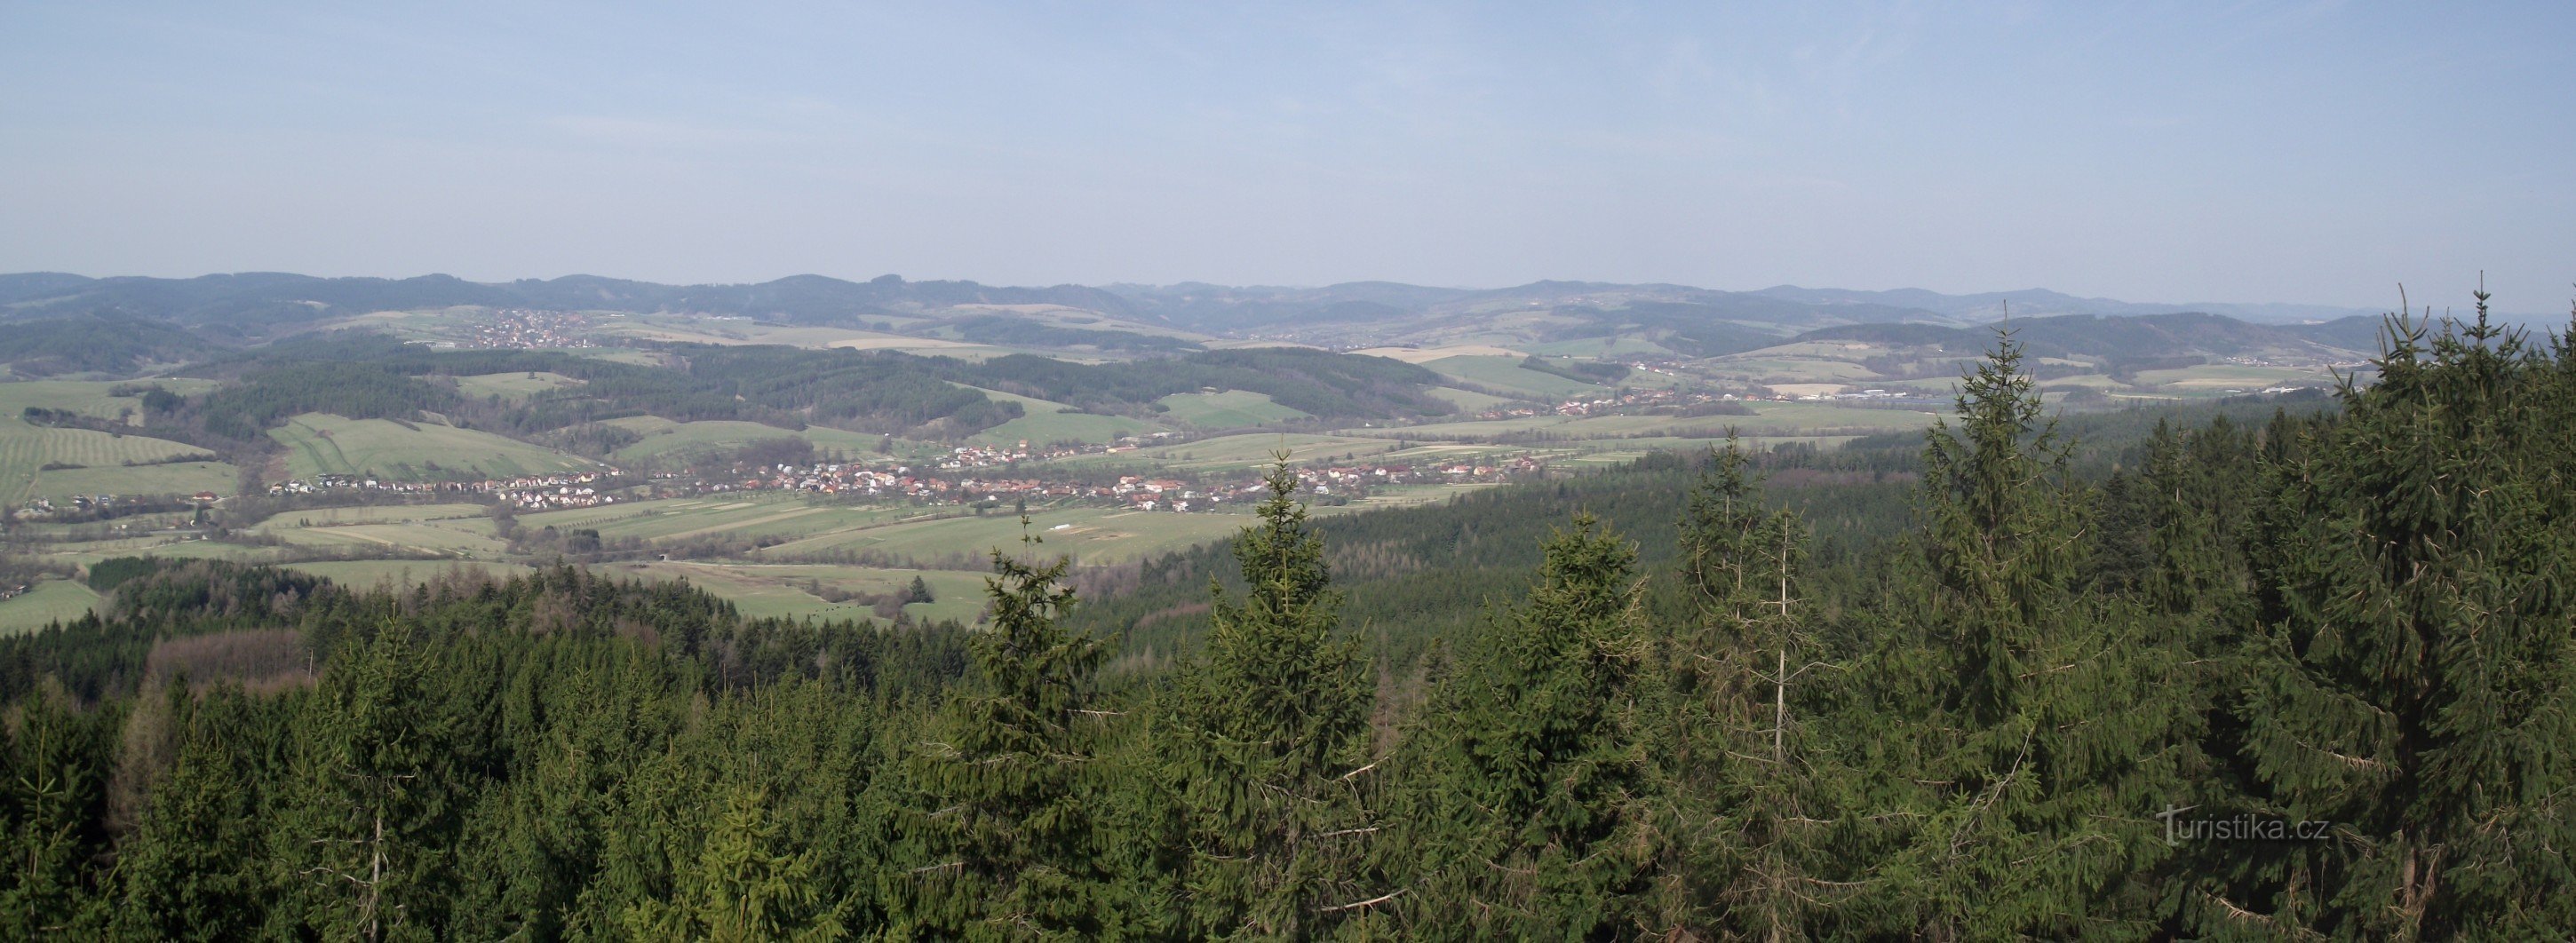 utsikt från utsiktstornet i södra Valakien och Vizovické-kullarna